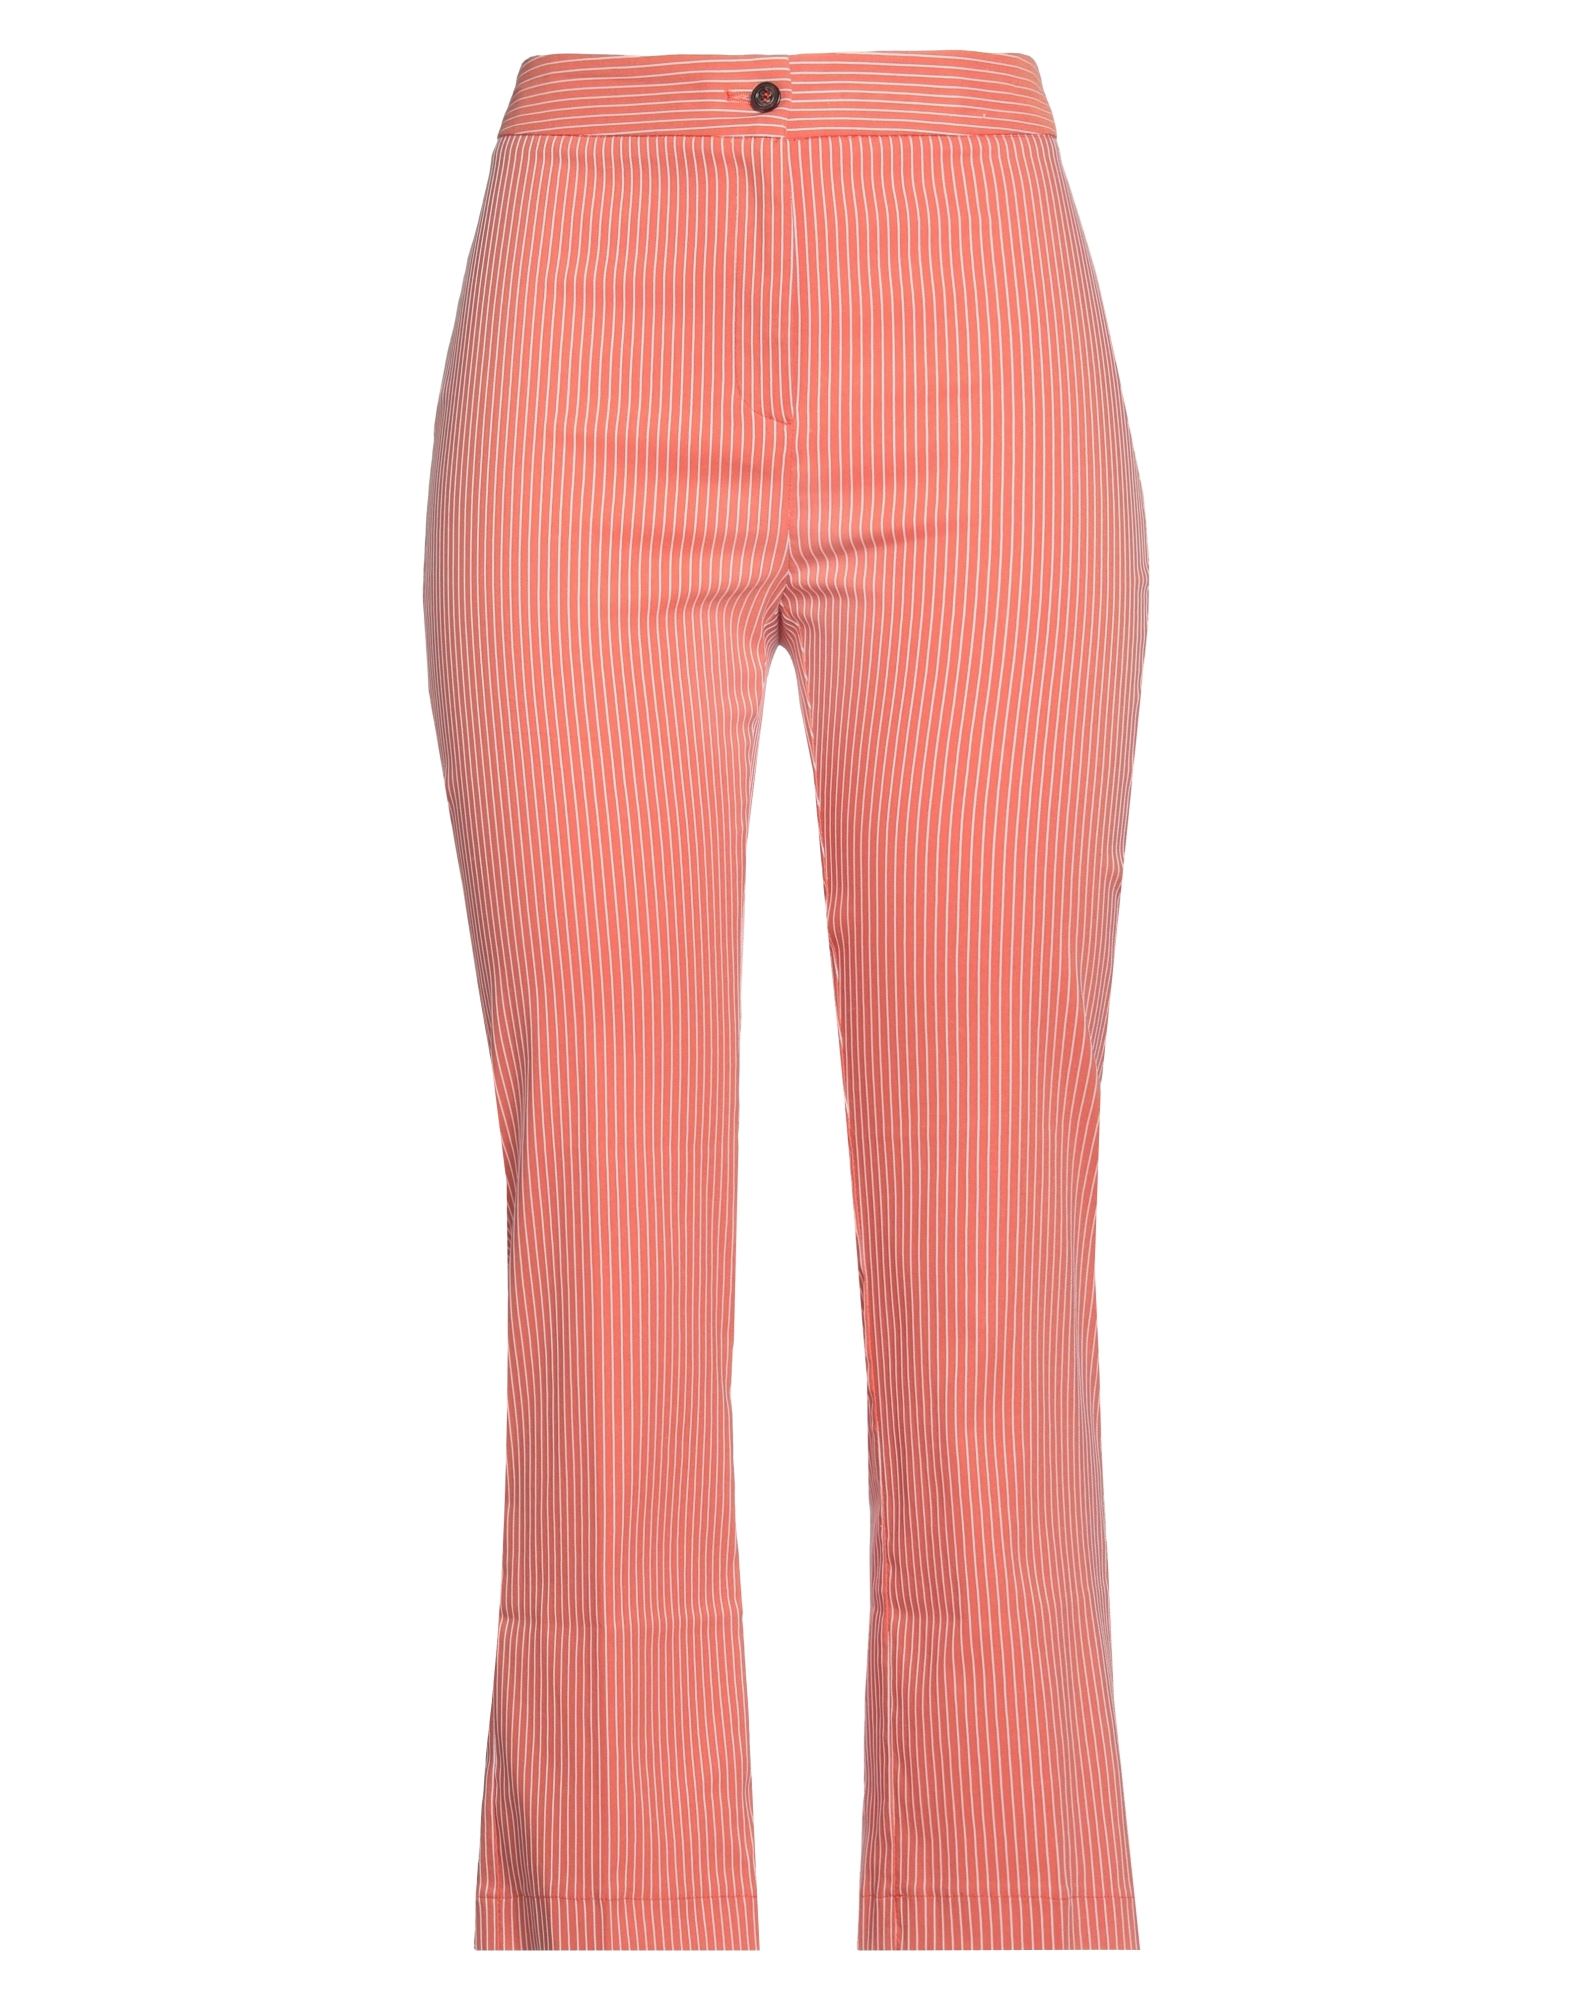 Même By Giab's Woman Pants Salmon Pink Size 8 Cotton, Polyamide, Polyester, Elastane